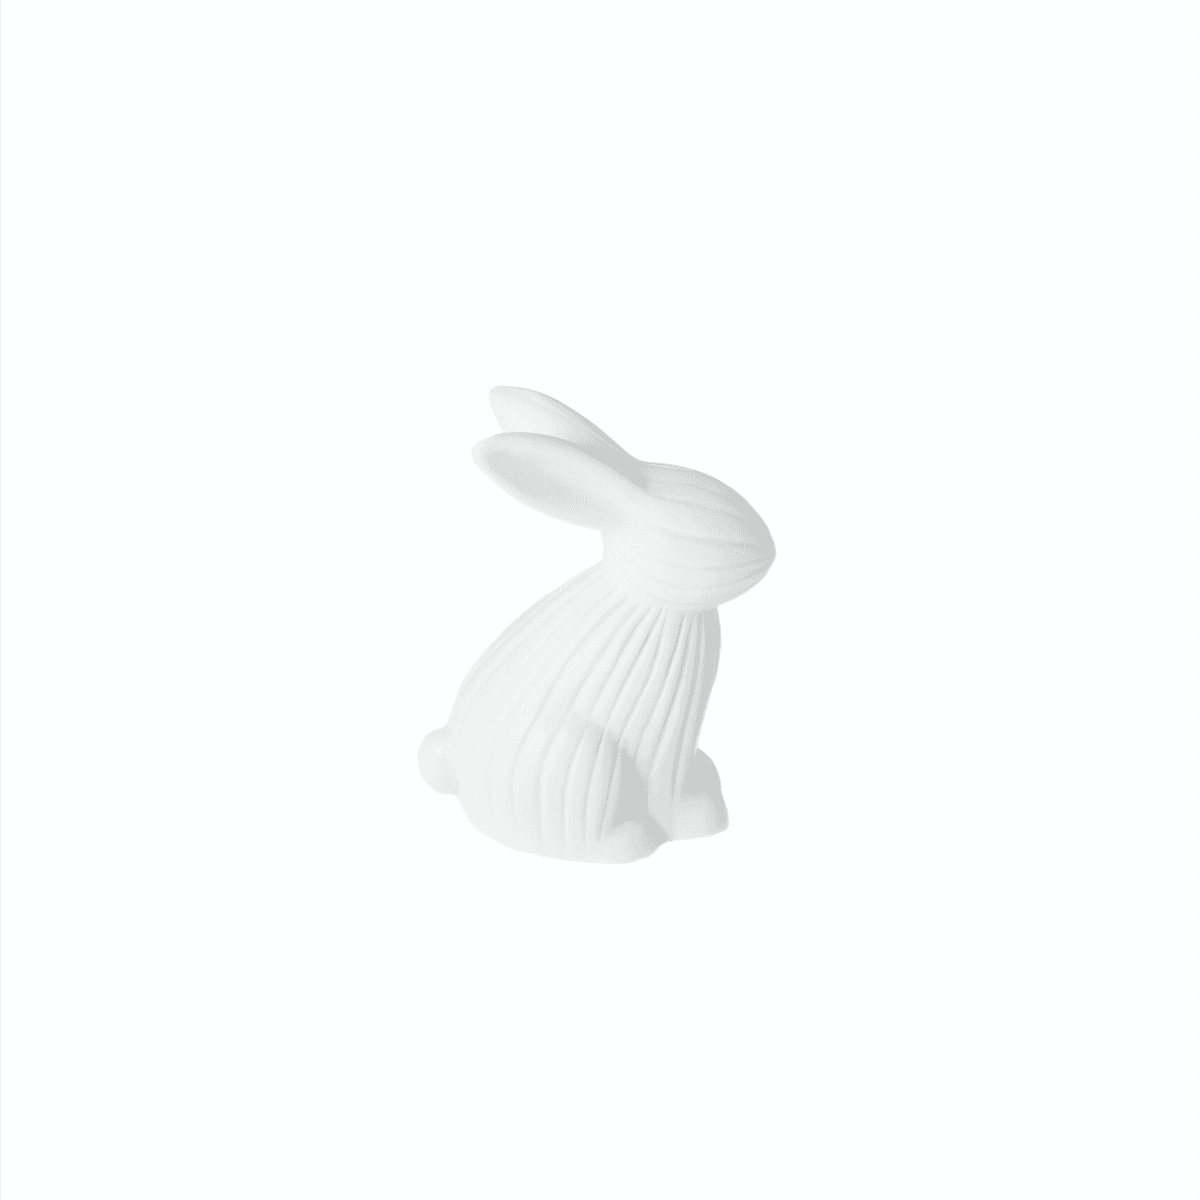 Immagine del prodotto Coniglio Arthur in Ceramica opaca Bianca - 2 misure | Storefactory